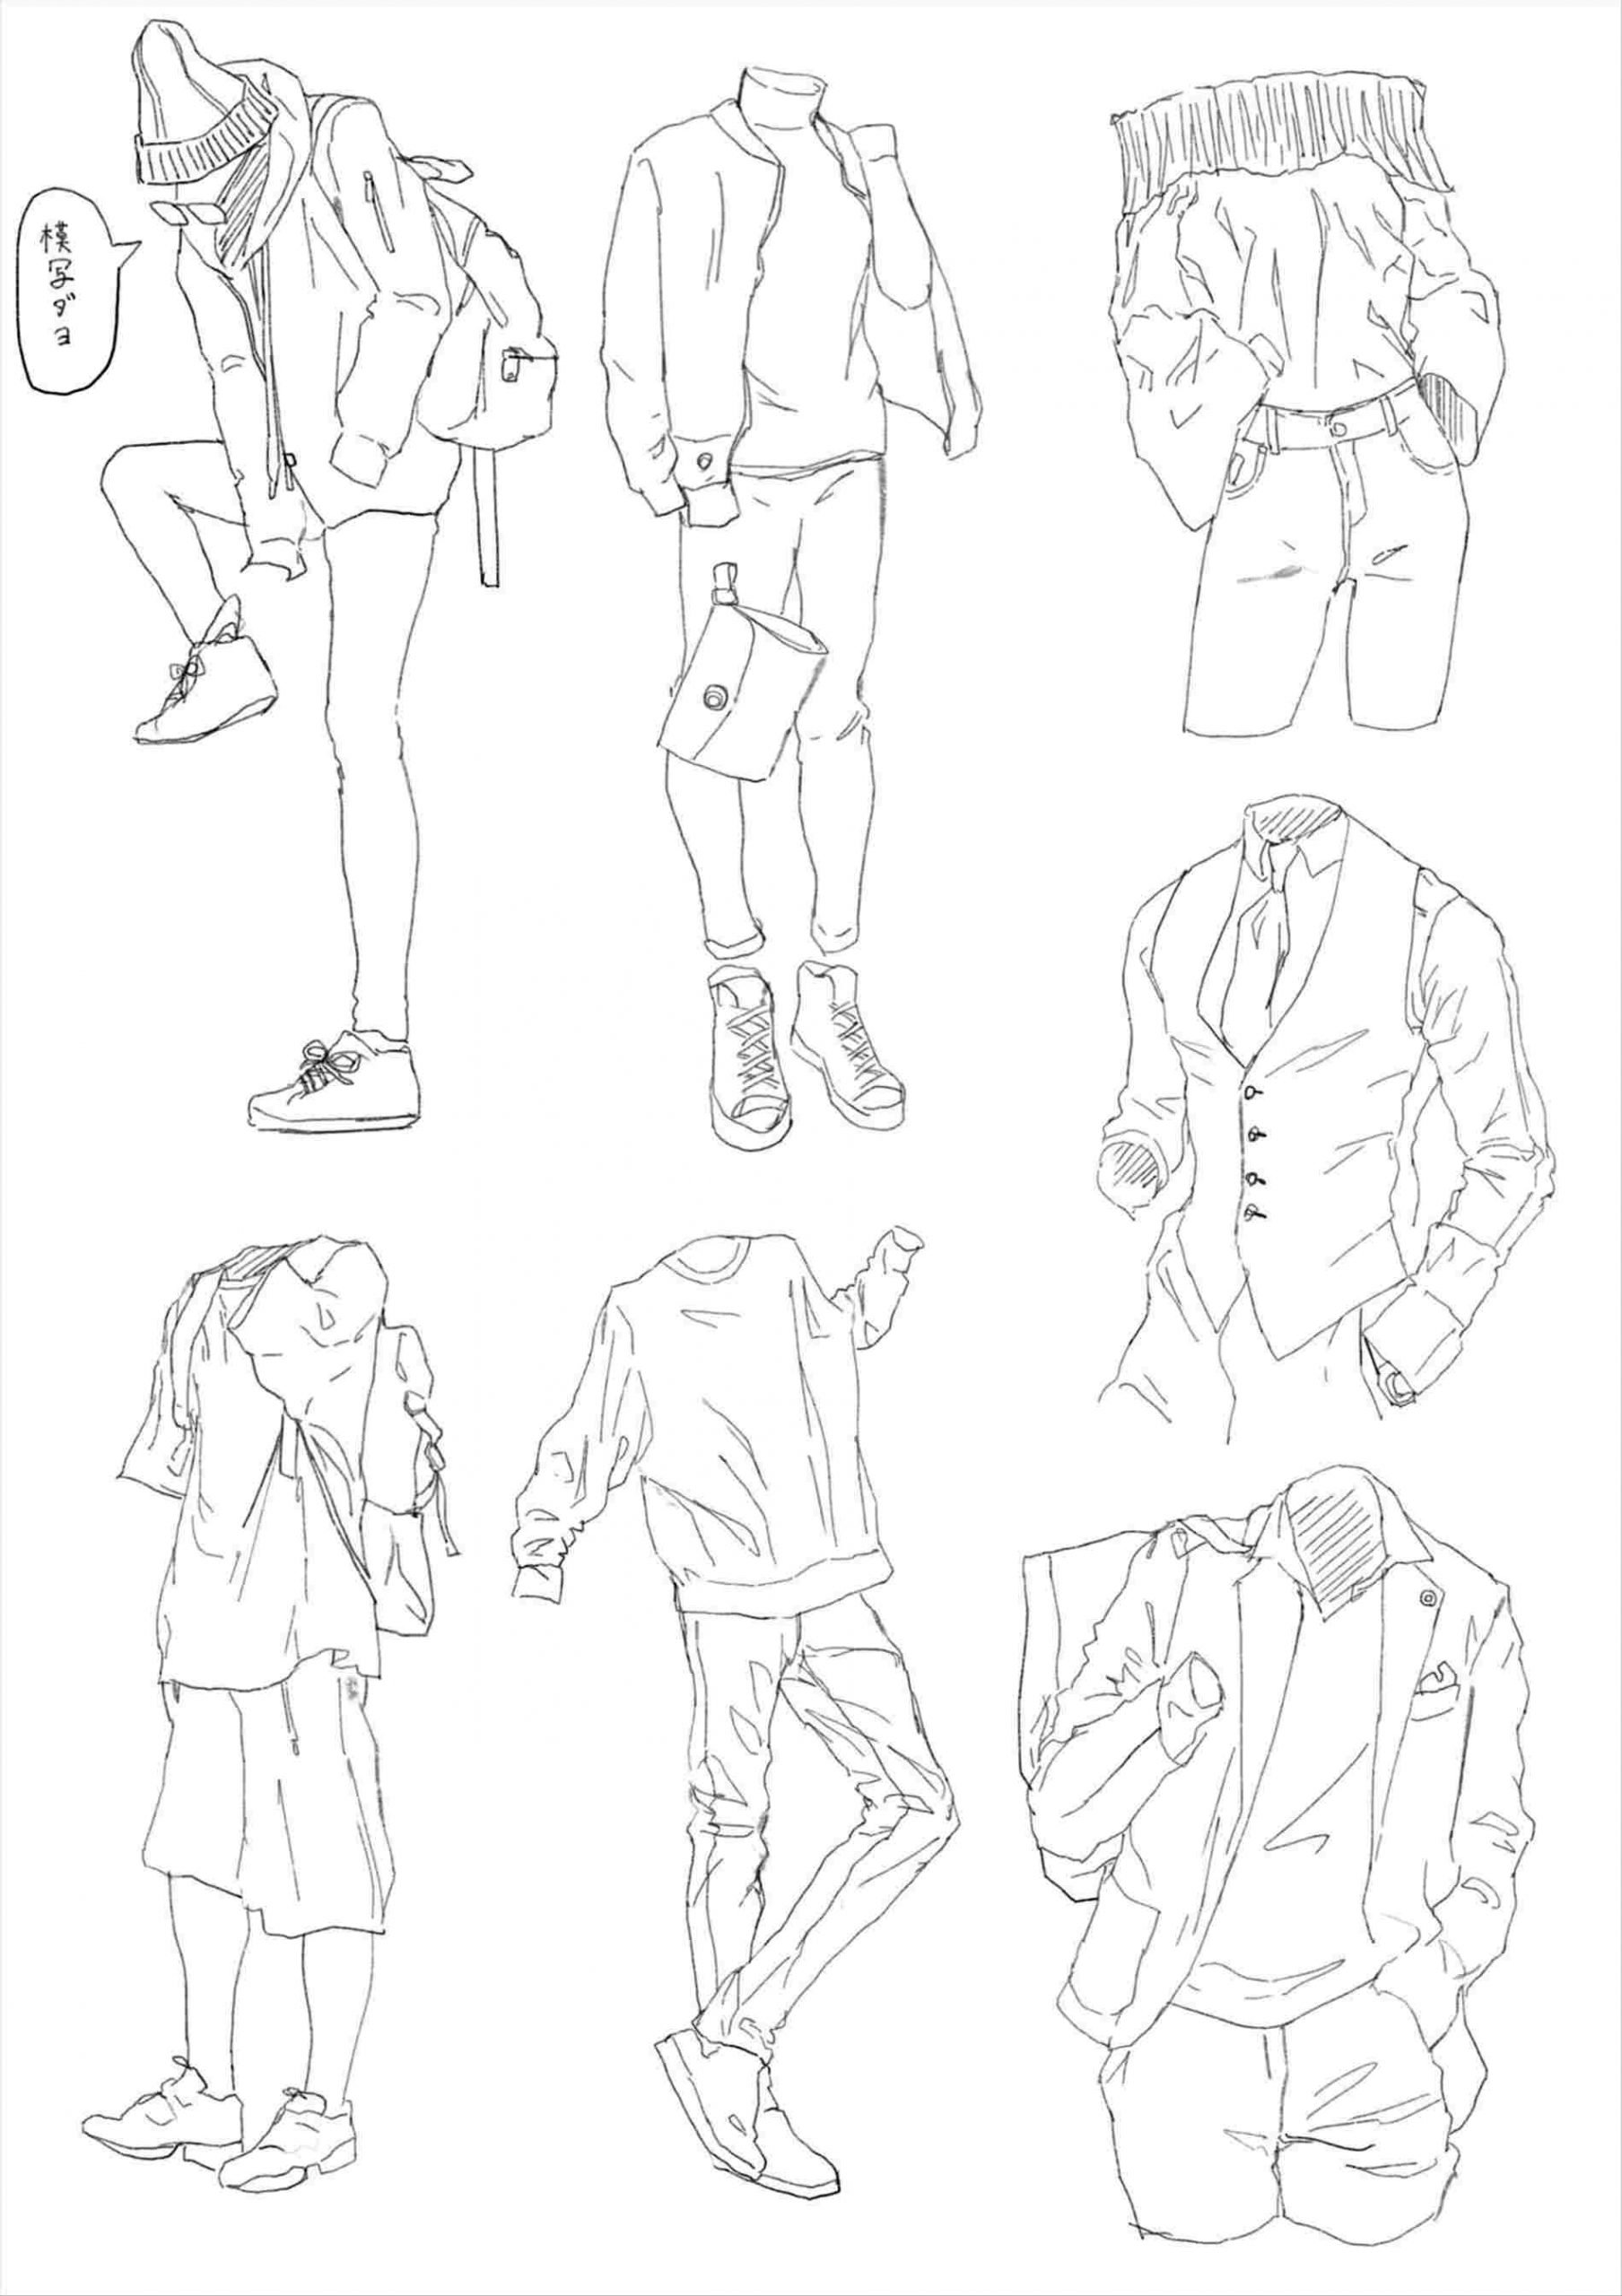 How To Draw An Anime Boy Body - AnimeFanClub.net